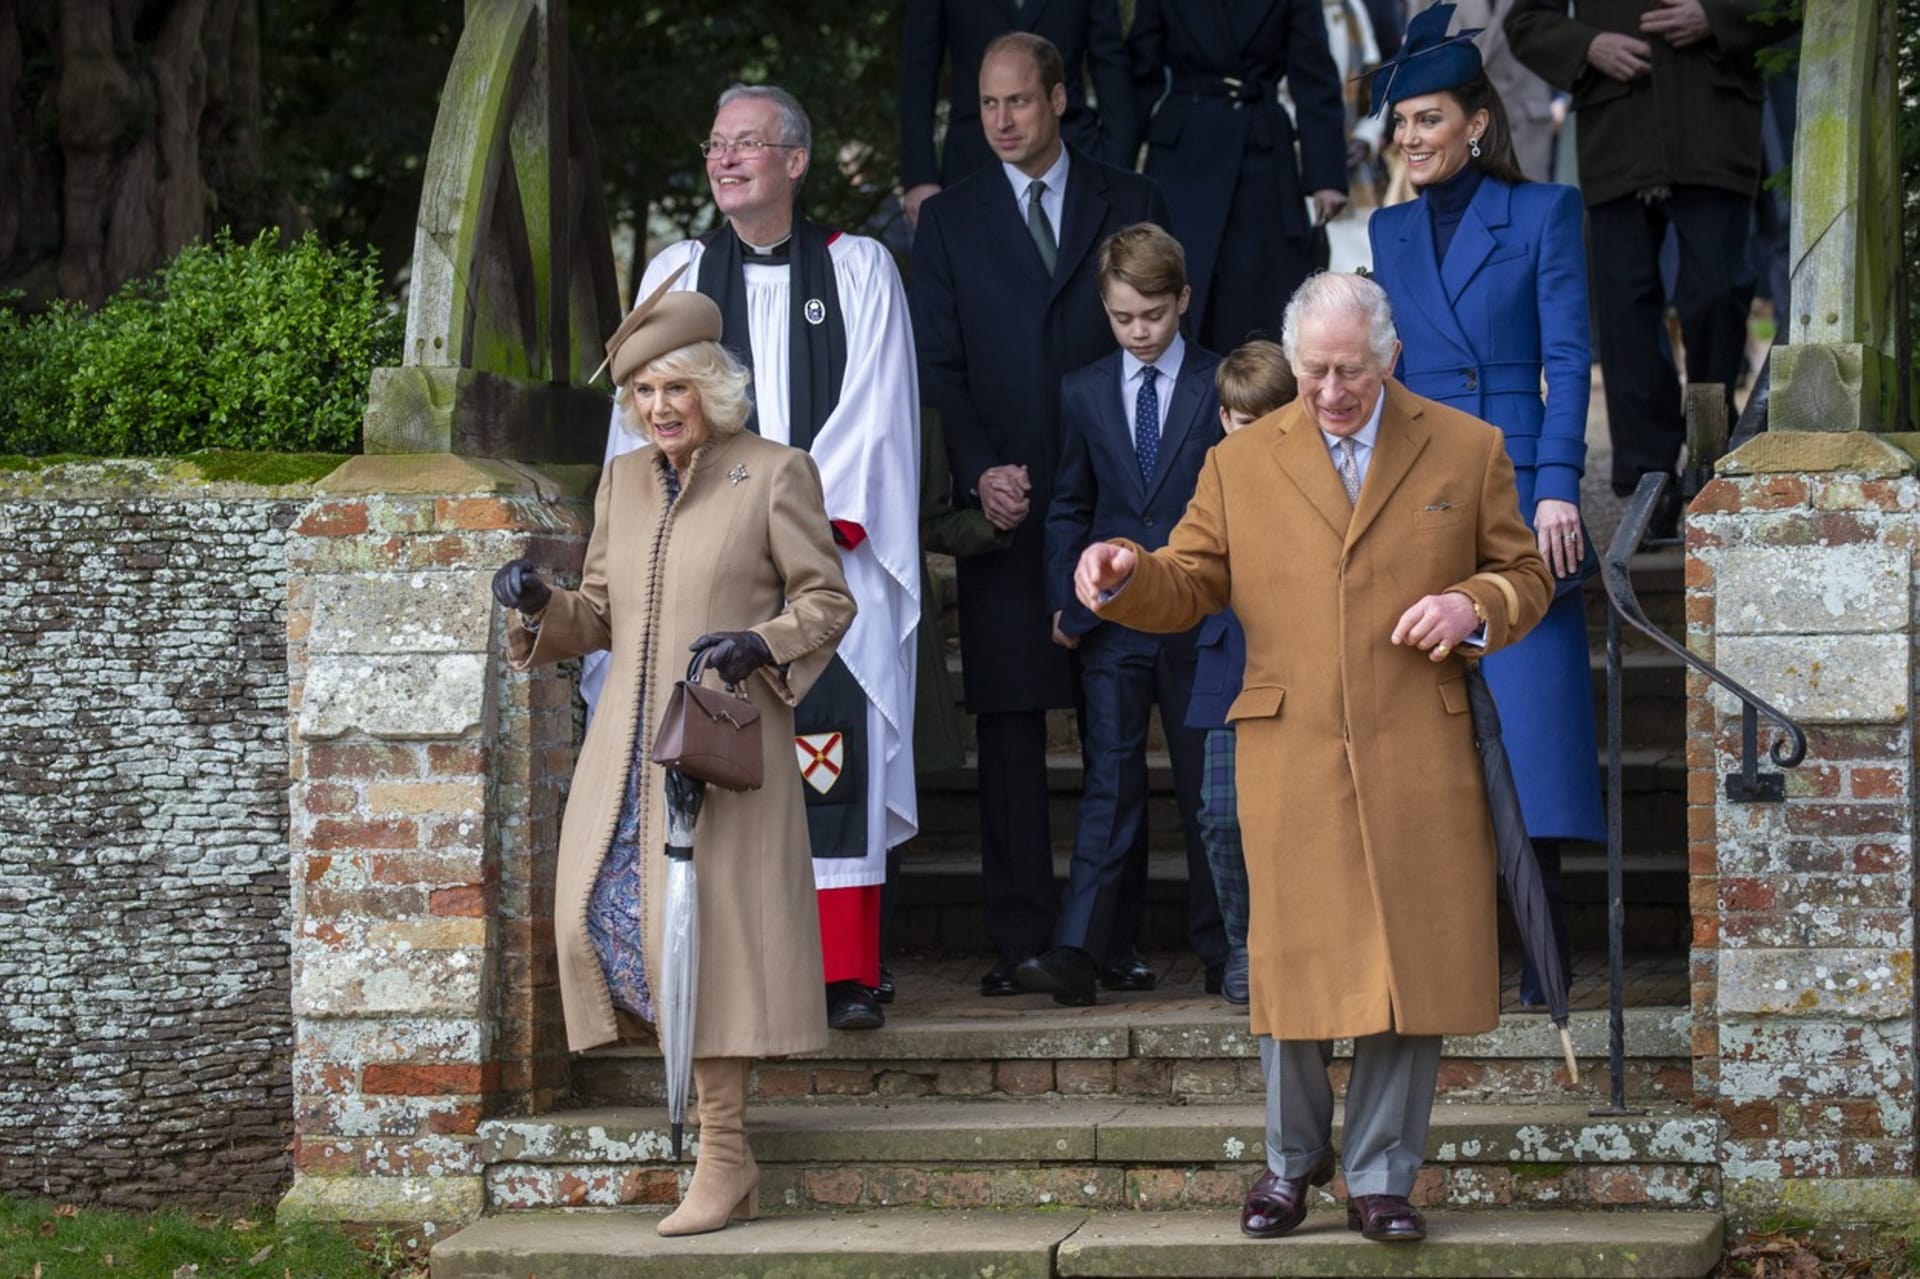 Král se s rodinou zúčastnil také tradiční vánoční bohoslužby. Do kostela v Sandringhamu jej doprovodila manželka Camilla, syn William s manželkou Kate a dětmi Georgem, Charlotte a Louisem. 